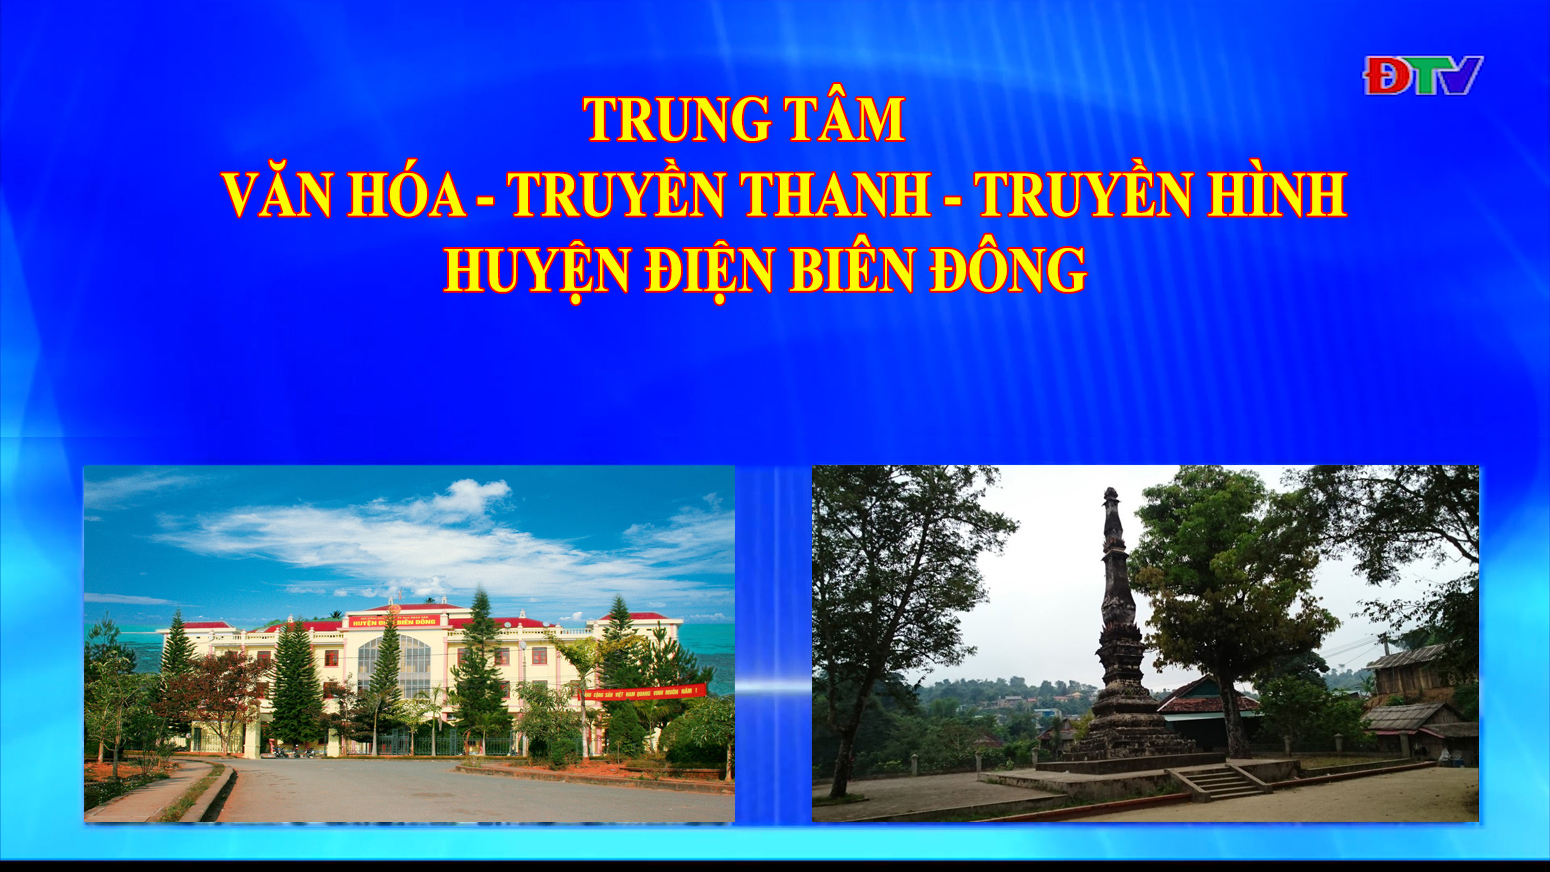 Trung tâm VH-TTTH huyện Điện Biên Đông (Ngày 11-6-2022)